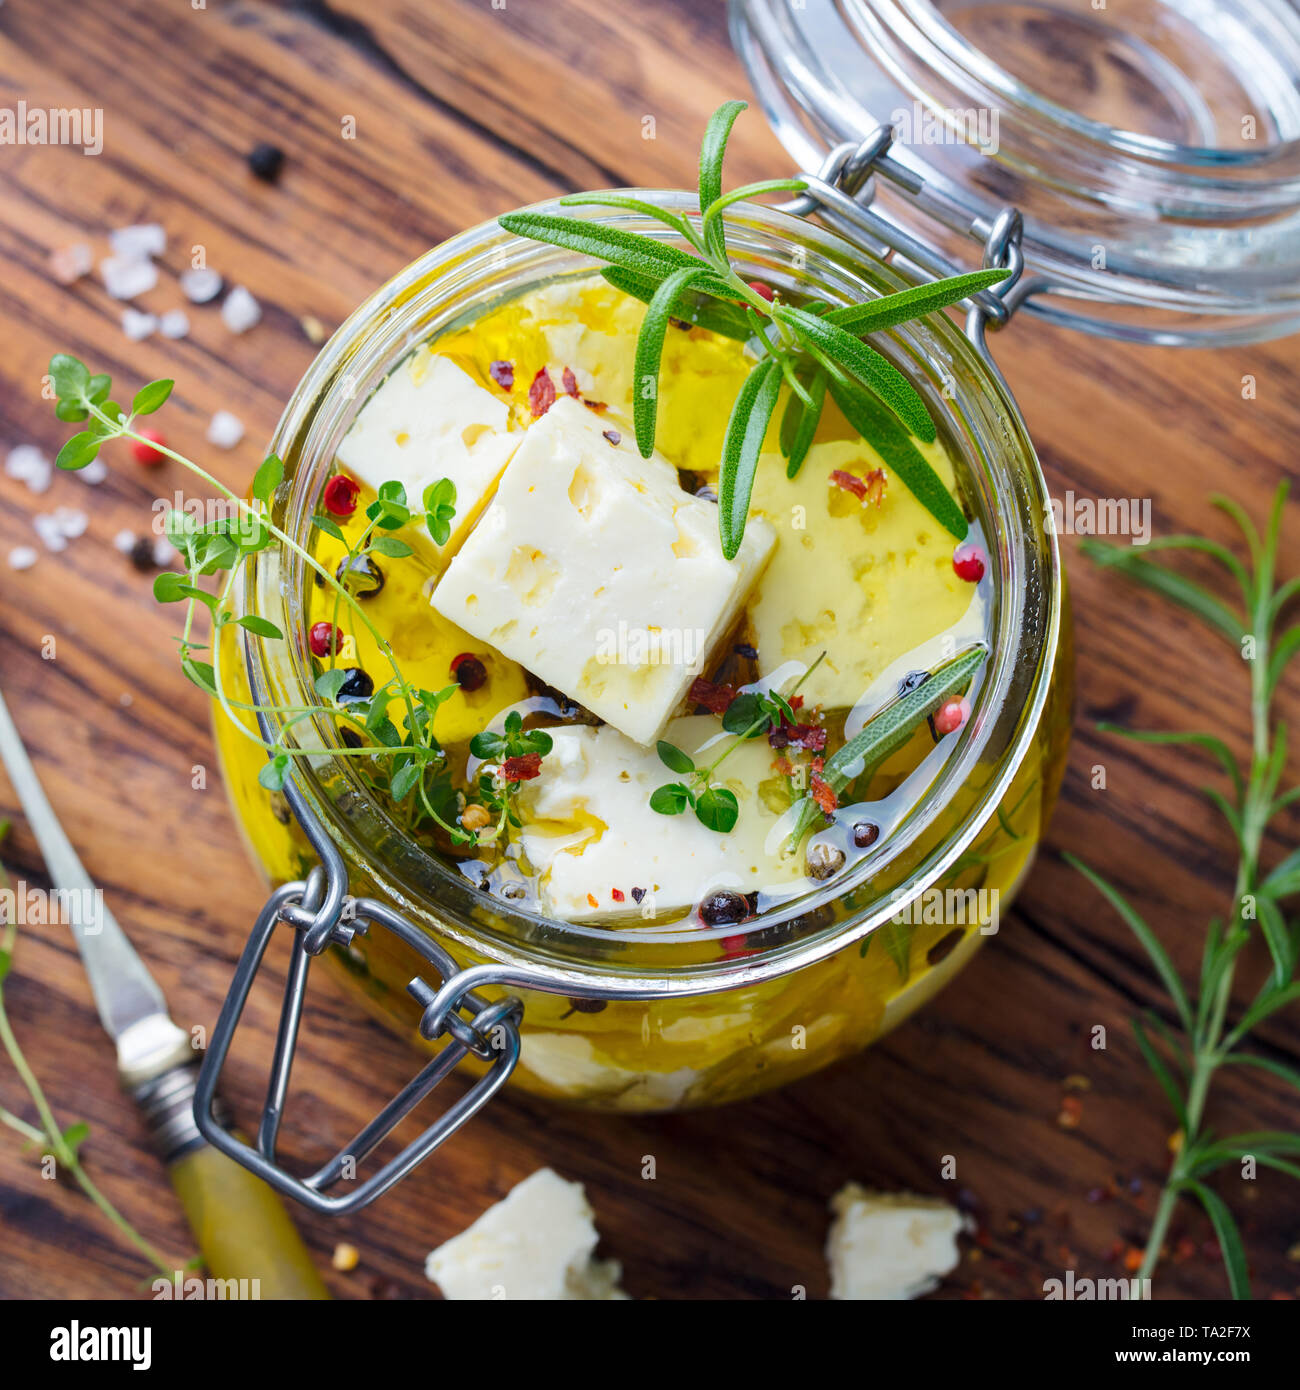 Le fromage Feta mariné à l'huile d'olive avec des herbes fraîches dans un bocal en verre. Fond de bois. Vue d'en haut. Banque D'Images